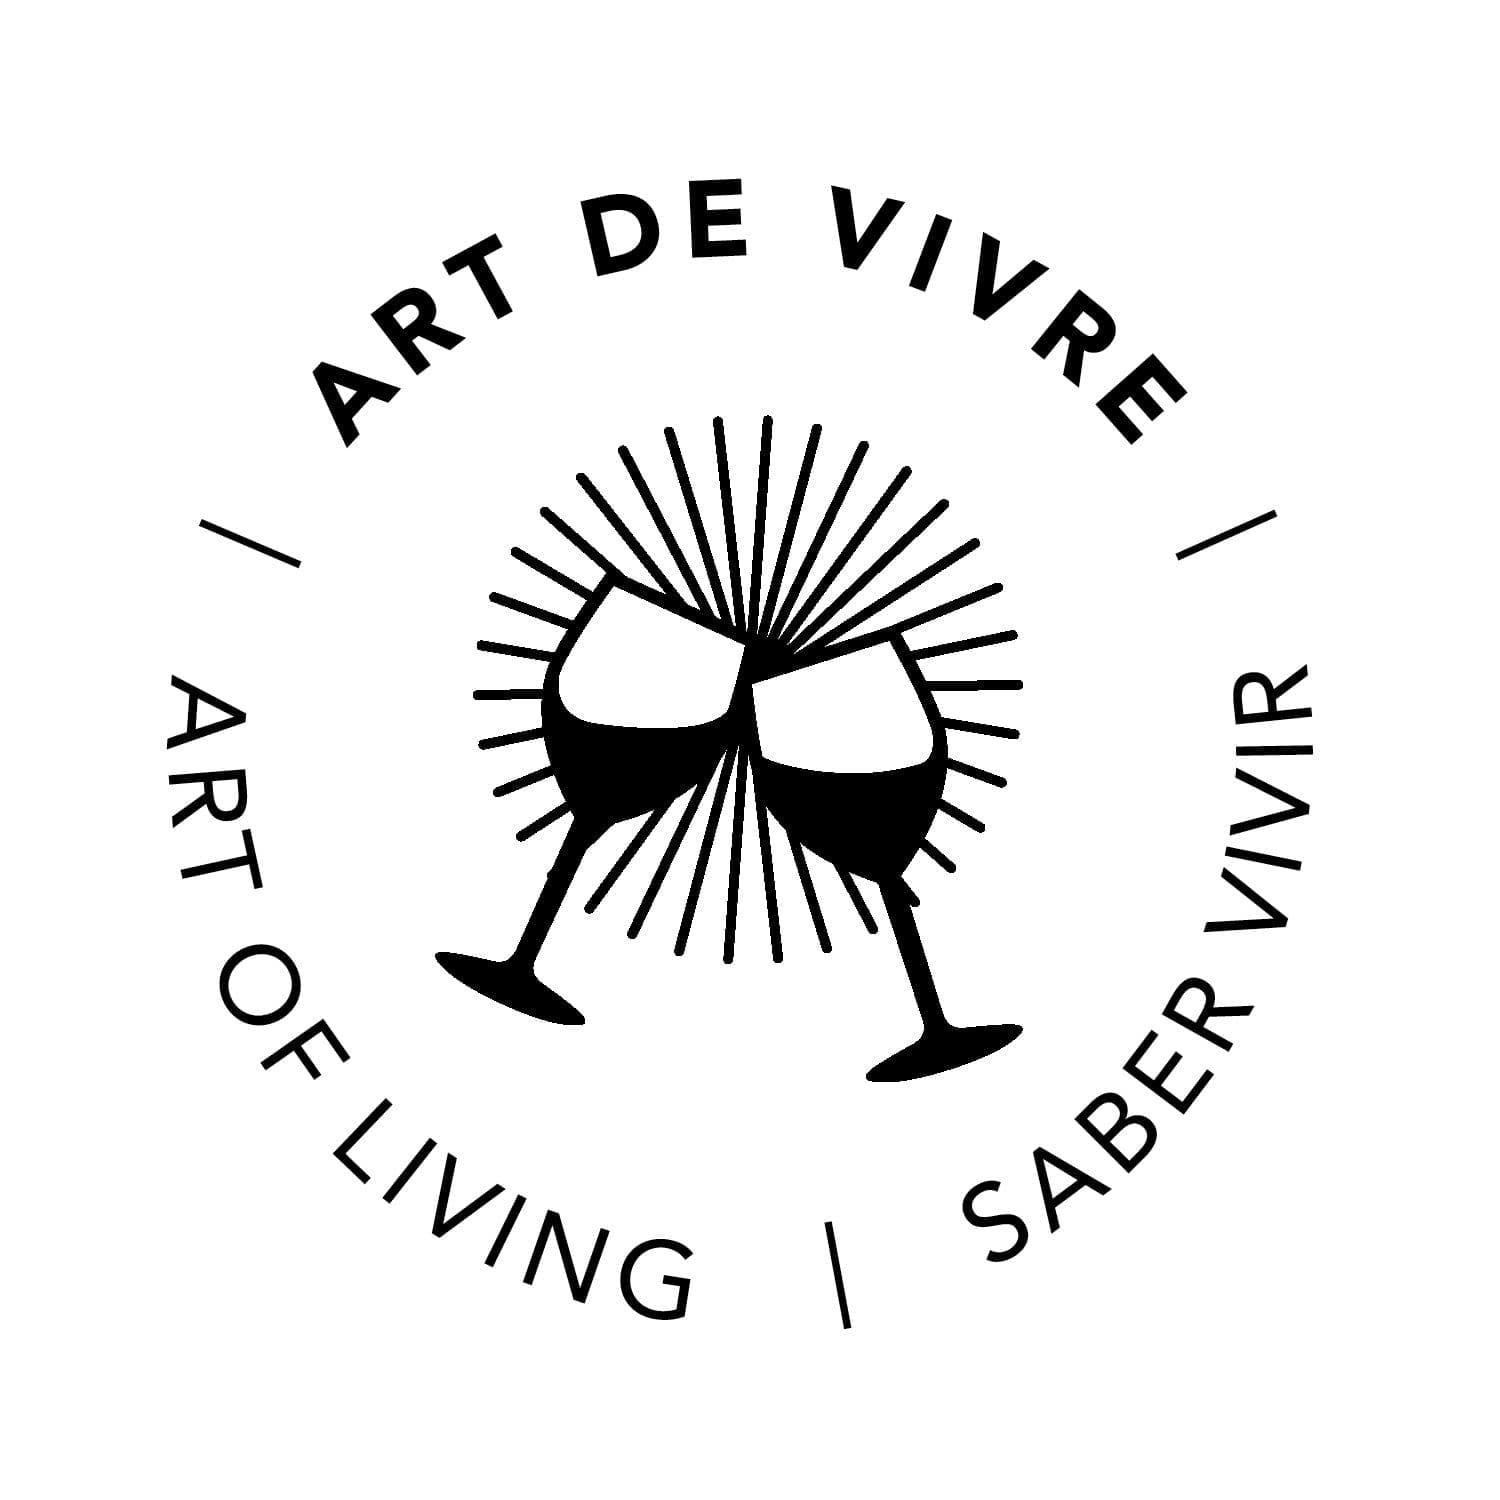 pictogramme art de vivre dessiné par ichetkar pour la nouvelle signalétique de la cité du vin de bordeaux